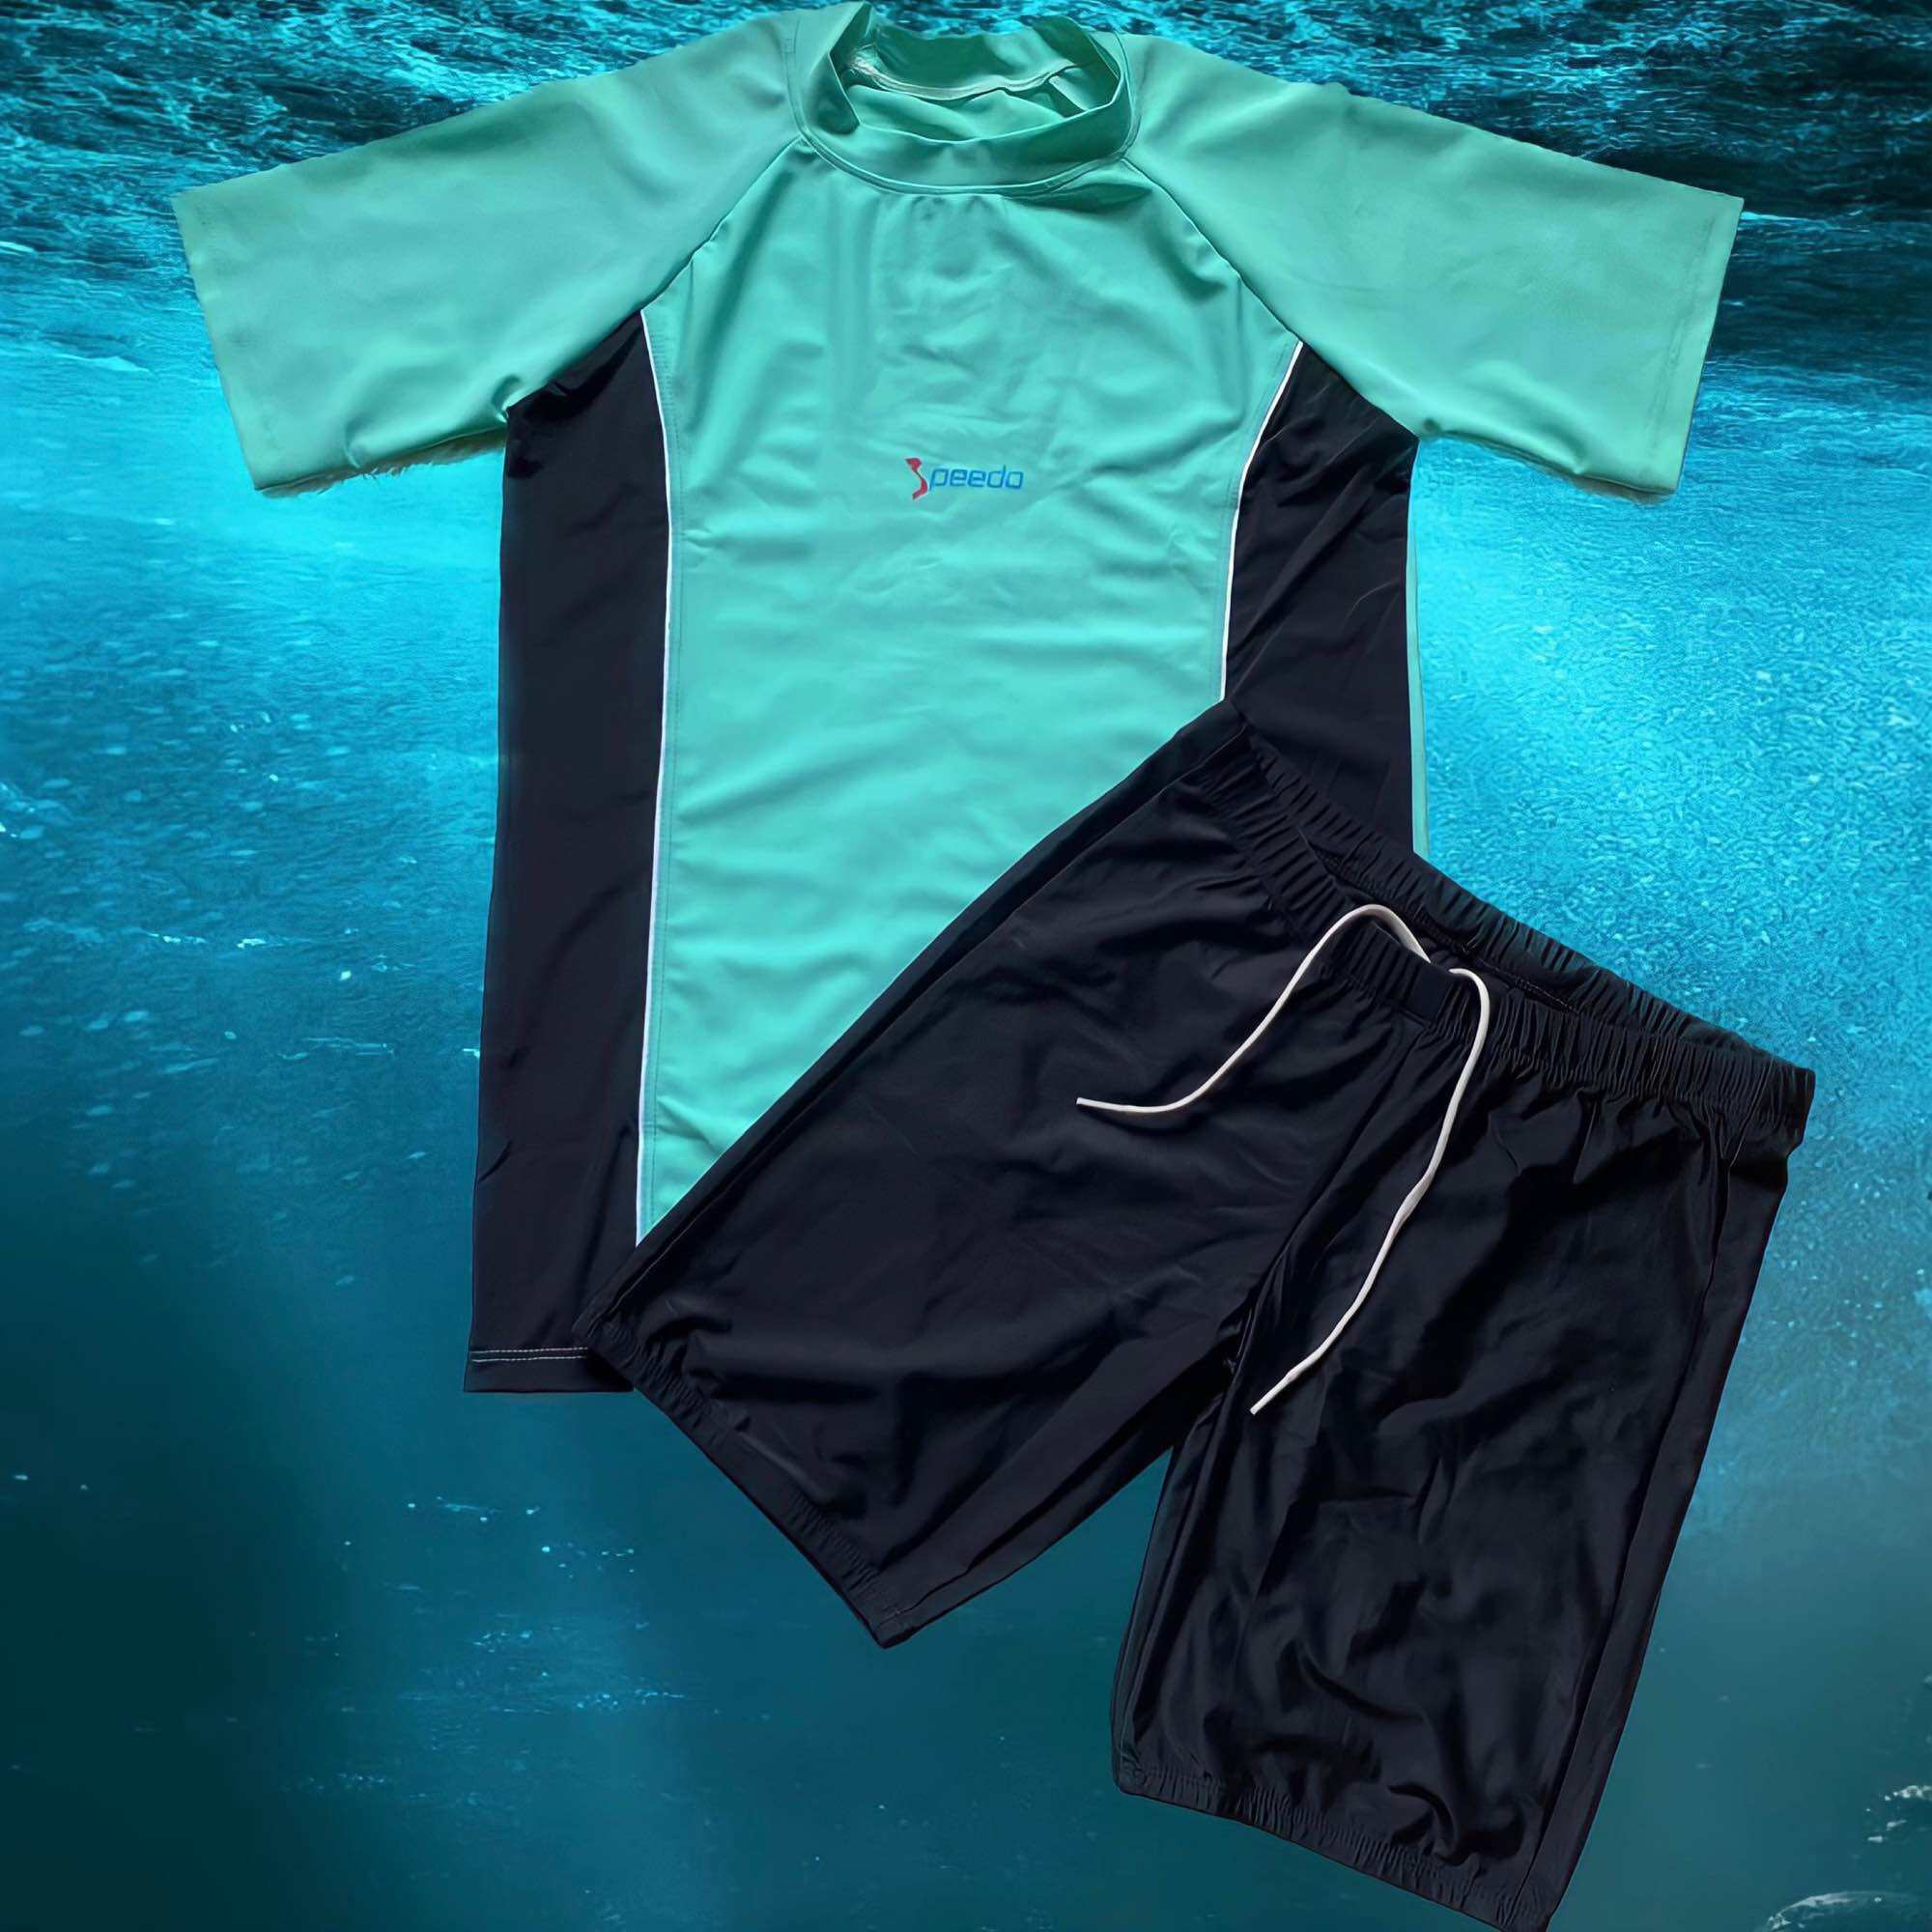 Bộ đồ bơi nam tay ngắn ( 6 màu ) cao cấp cá tính giá rẻ